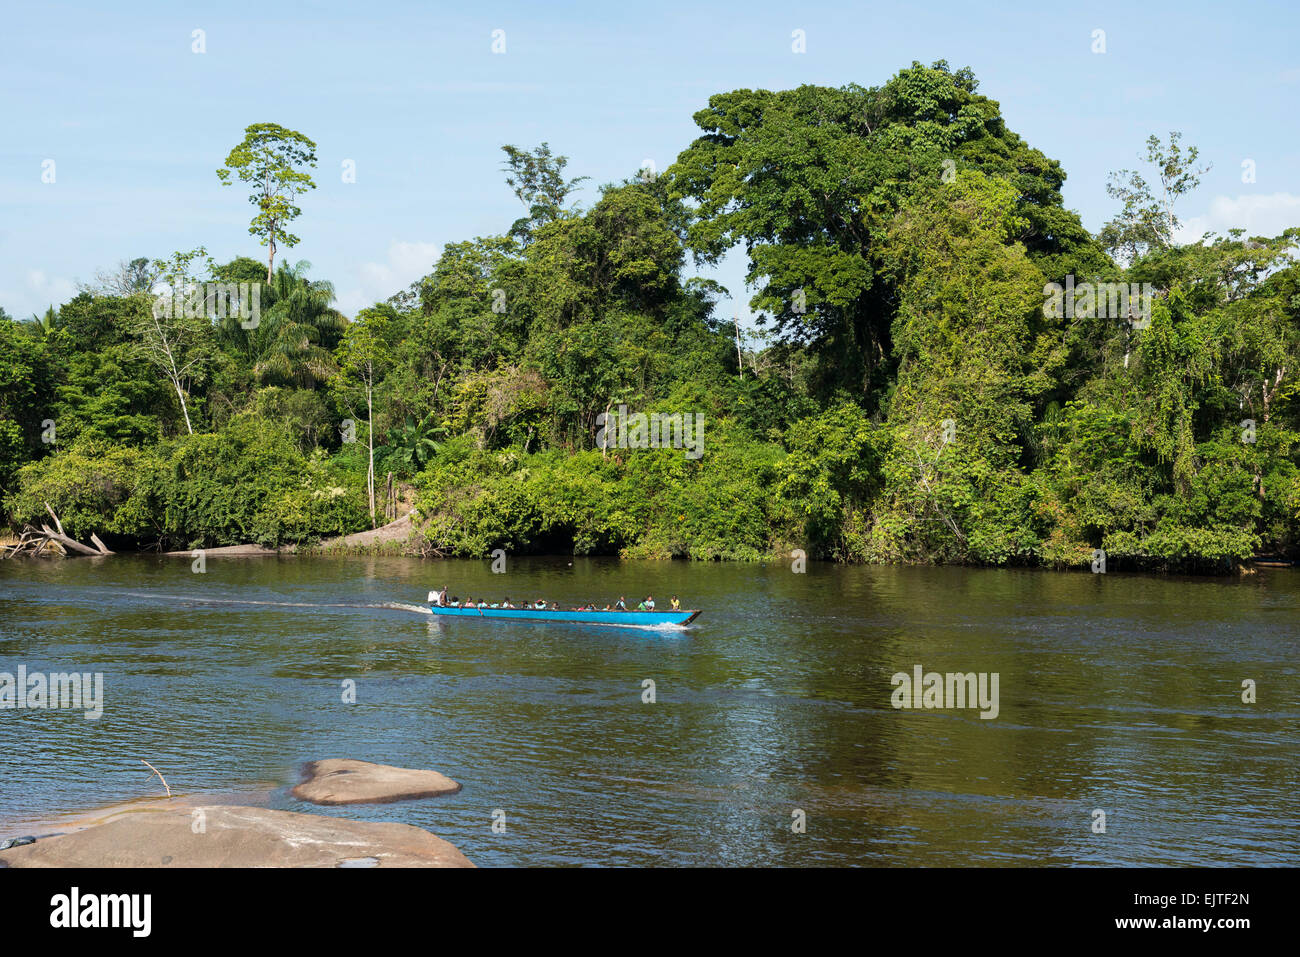 School boat on the Upper Suriname River, Suriname Stock Photo